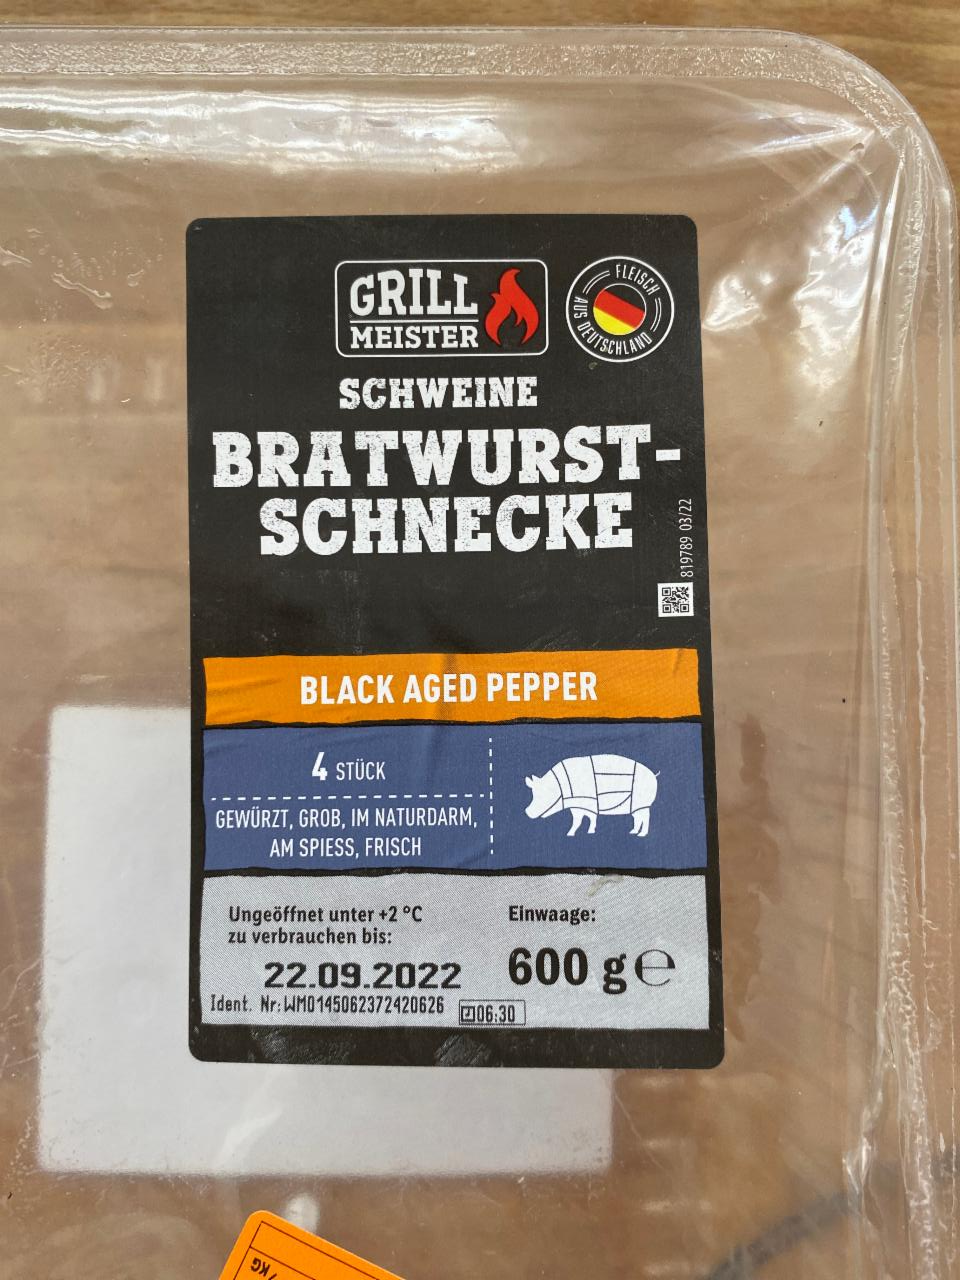 Fotografie - Schweine bratwurst schnecke Black Aged Pepper Grill meister